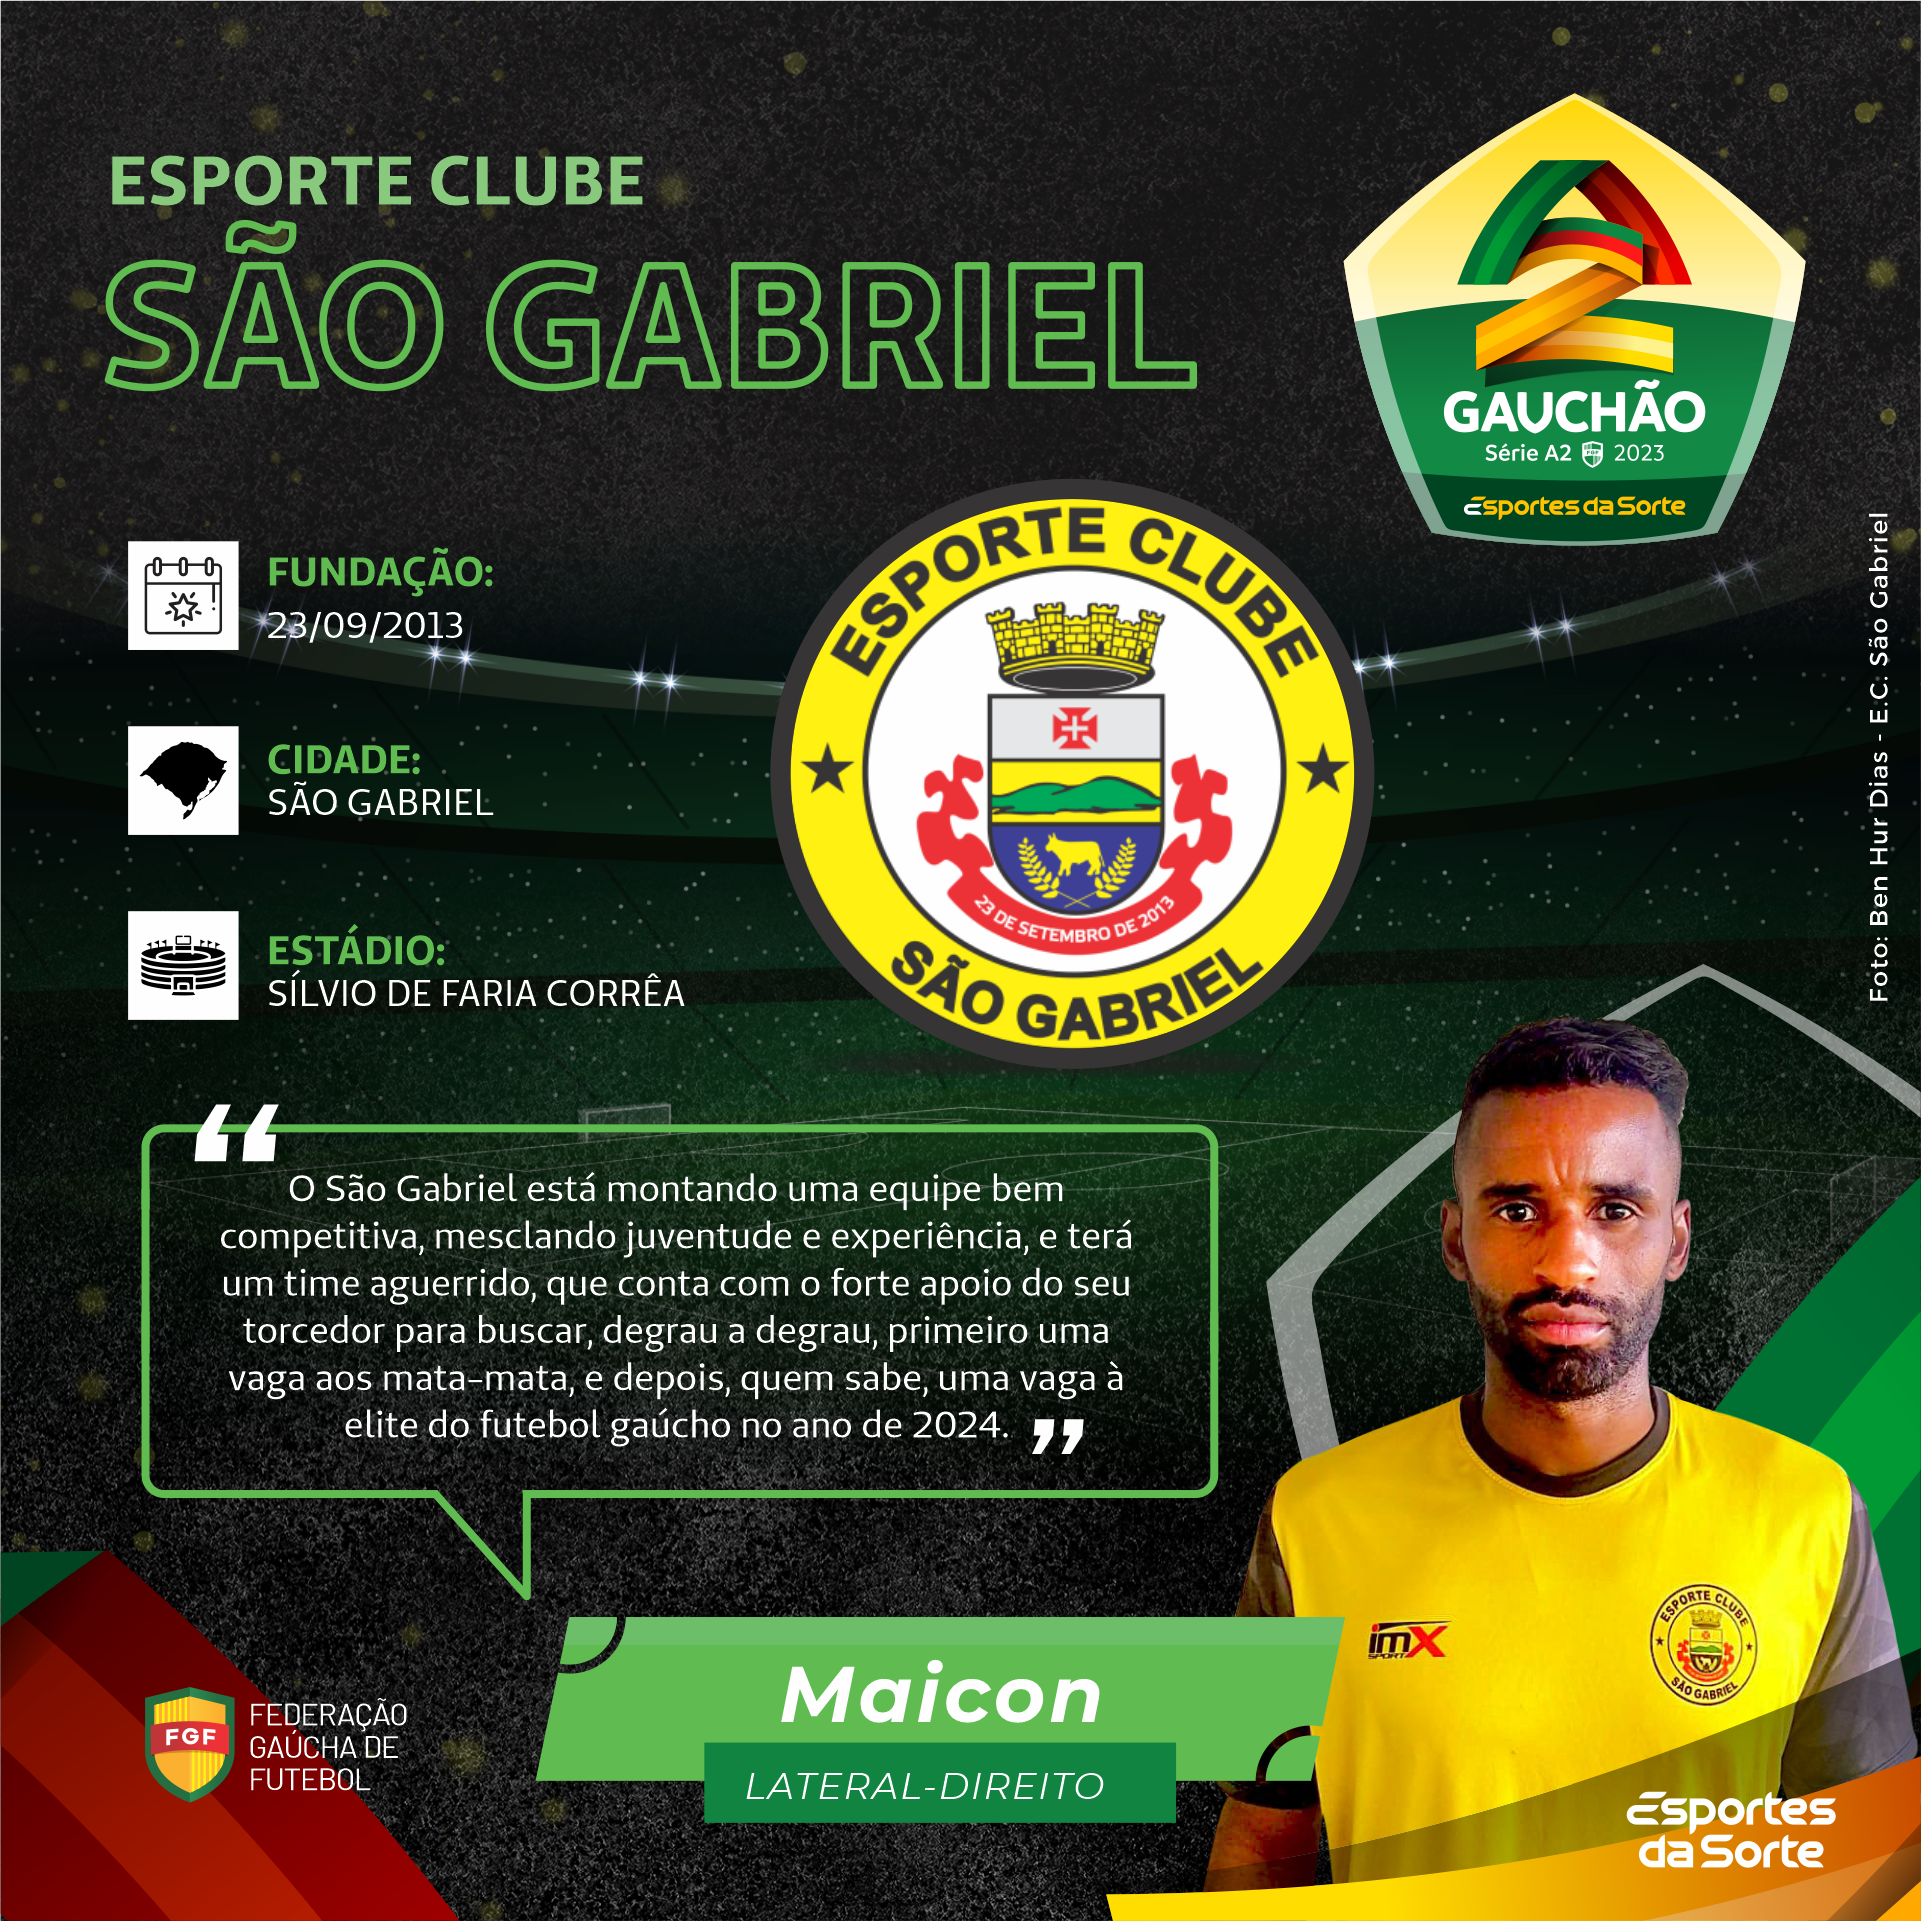 Esportes da Sorte adquire naming rights do Campeonato Gaúcho Série